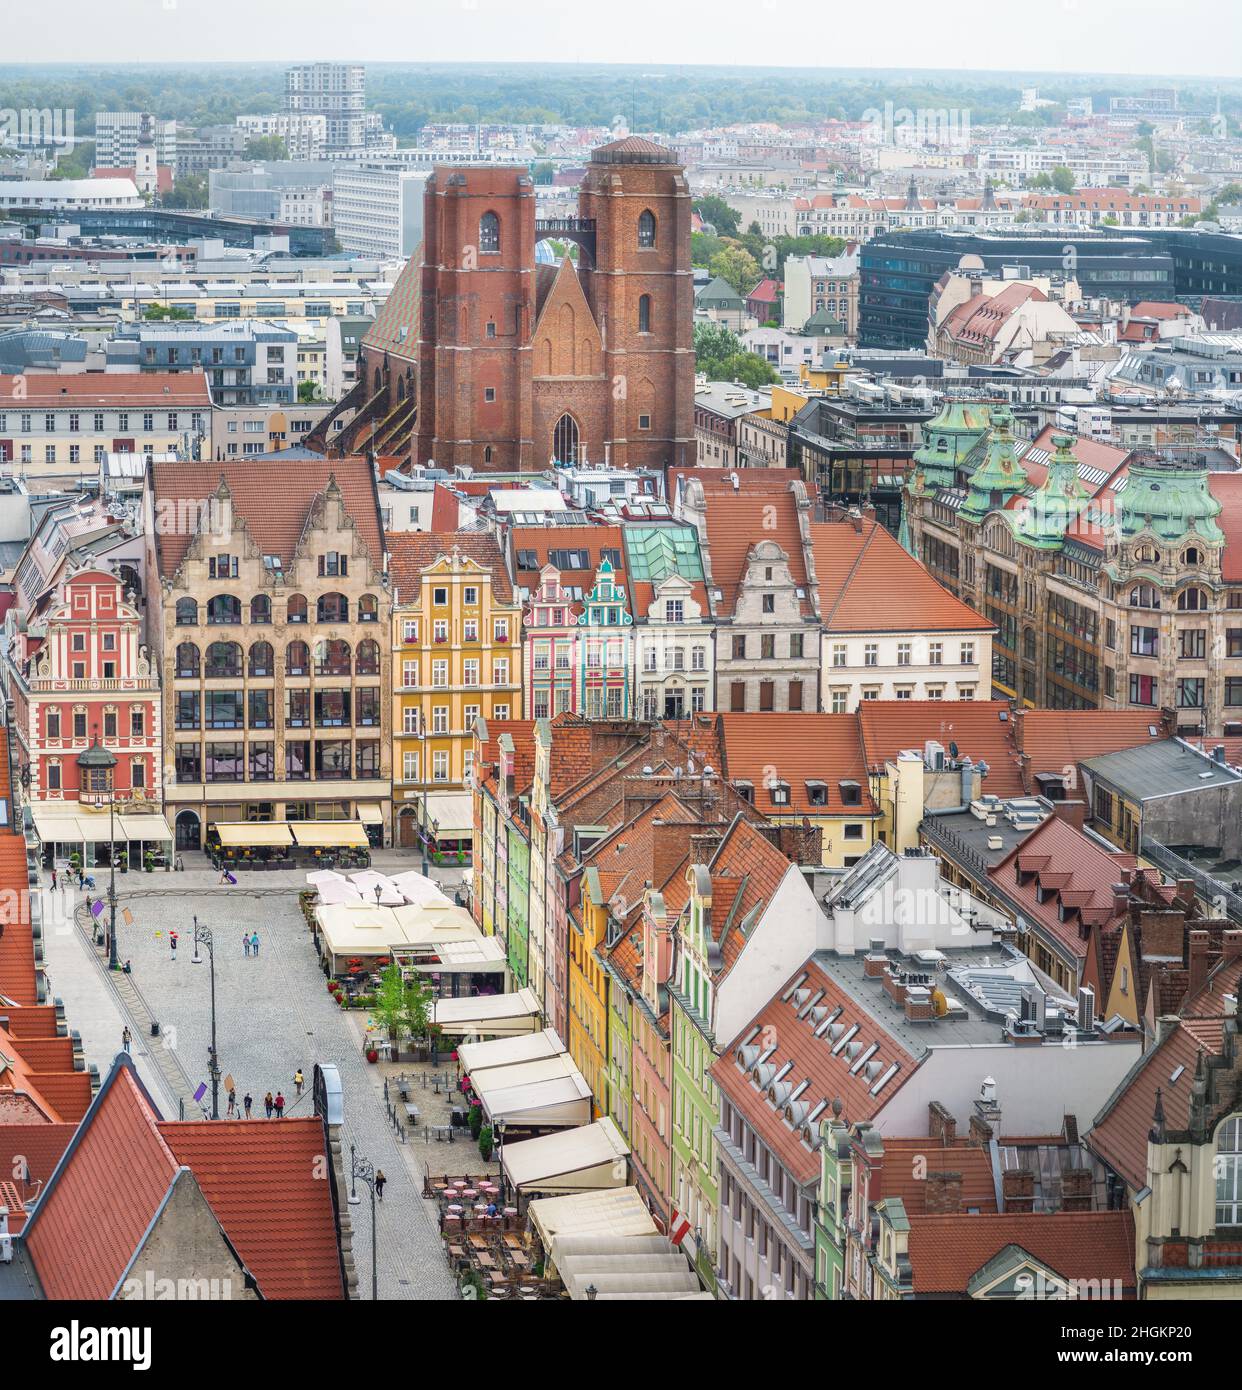 Vue aérienne de l'église Sainte-Marie-Madeleine et des bâtiments colorés de la place du marché - Wroclaw, Pologne Banque D'Images